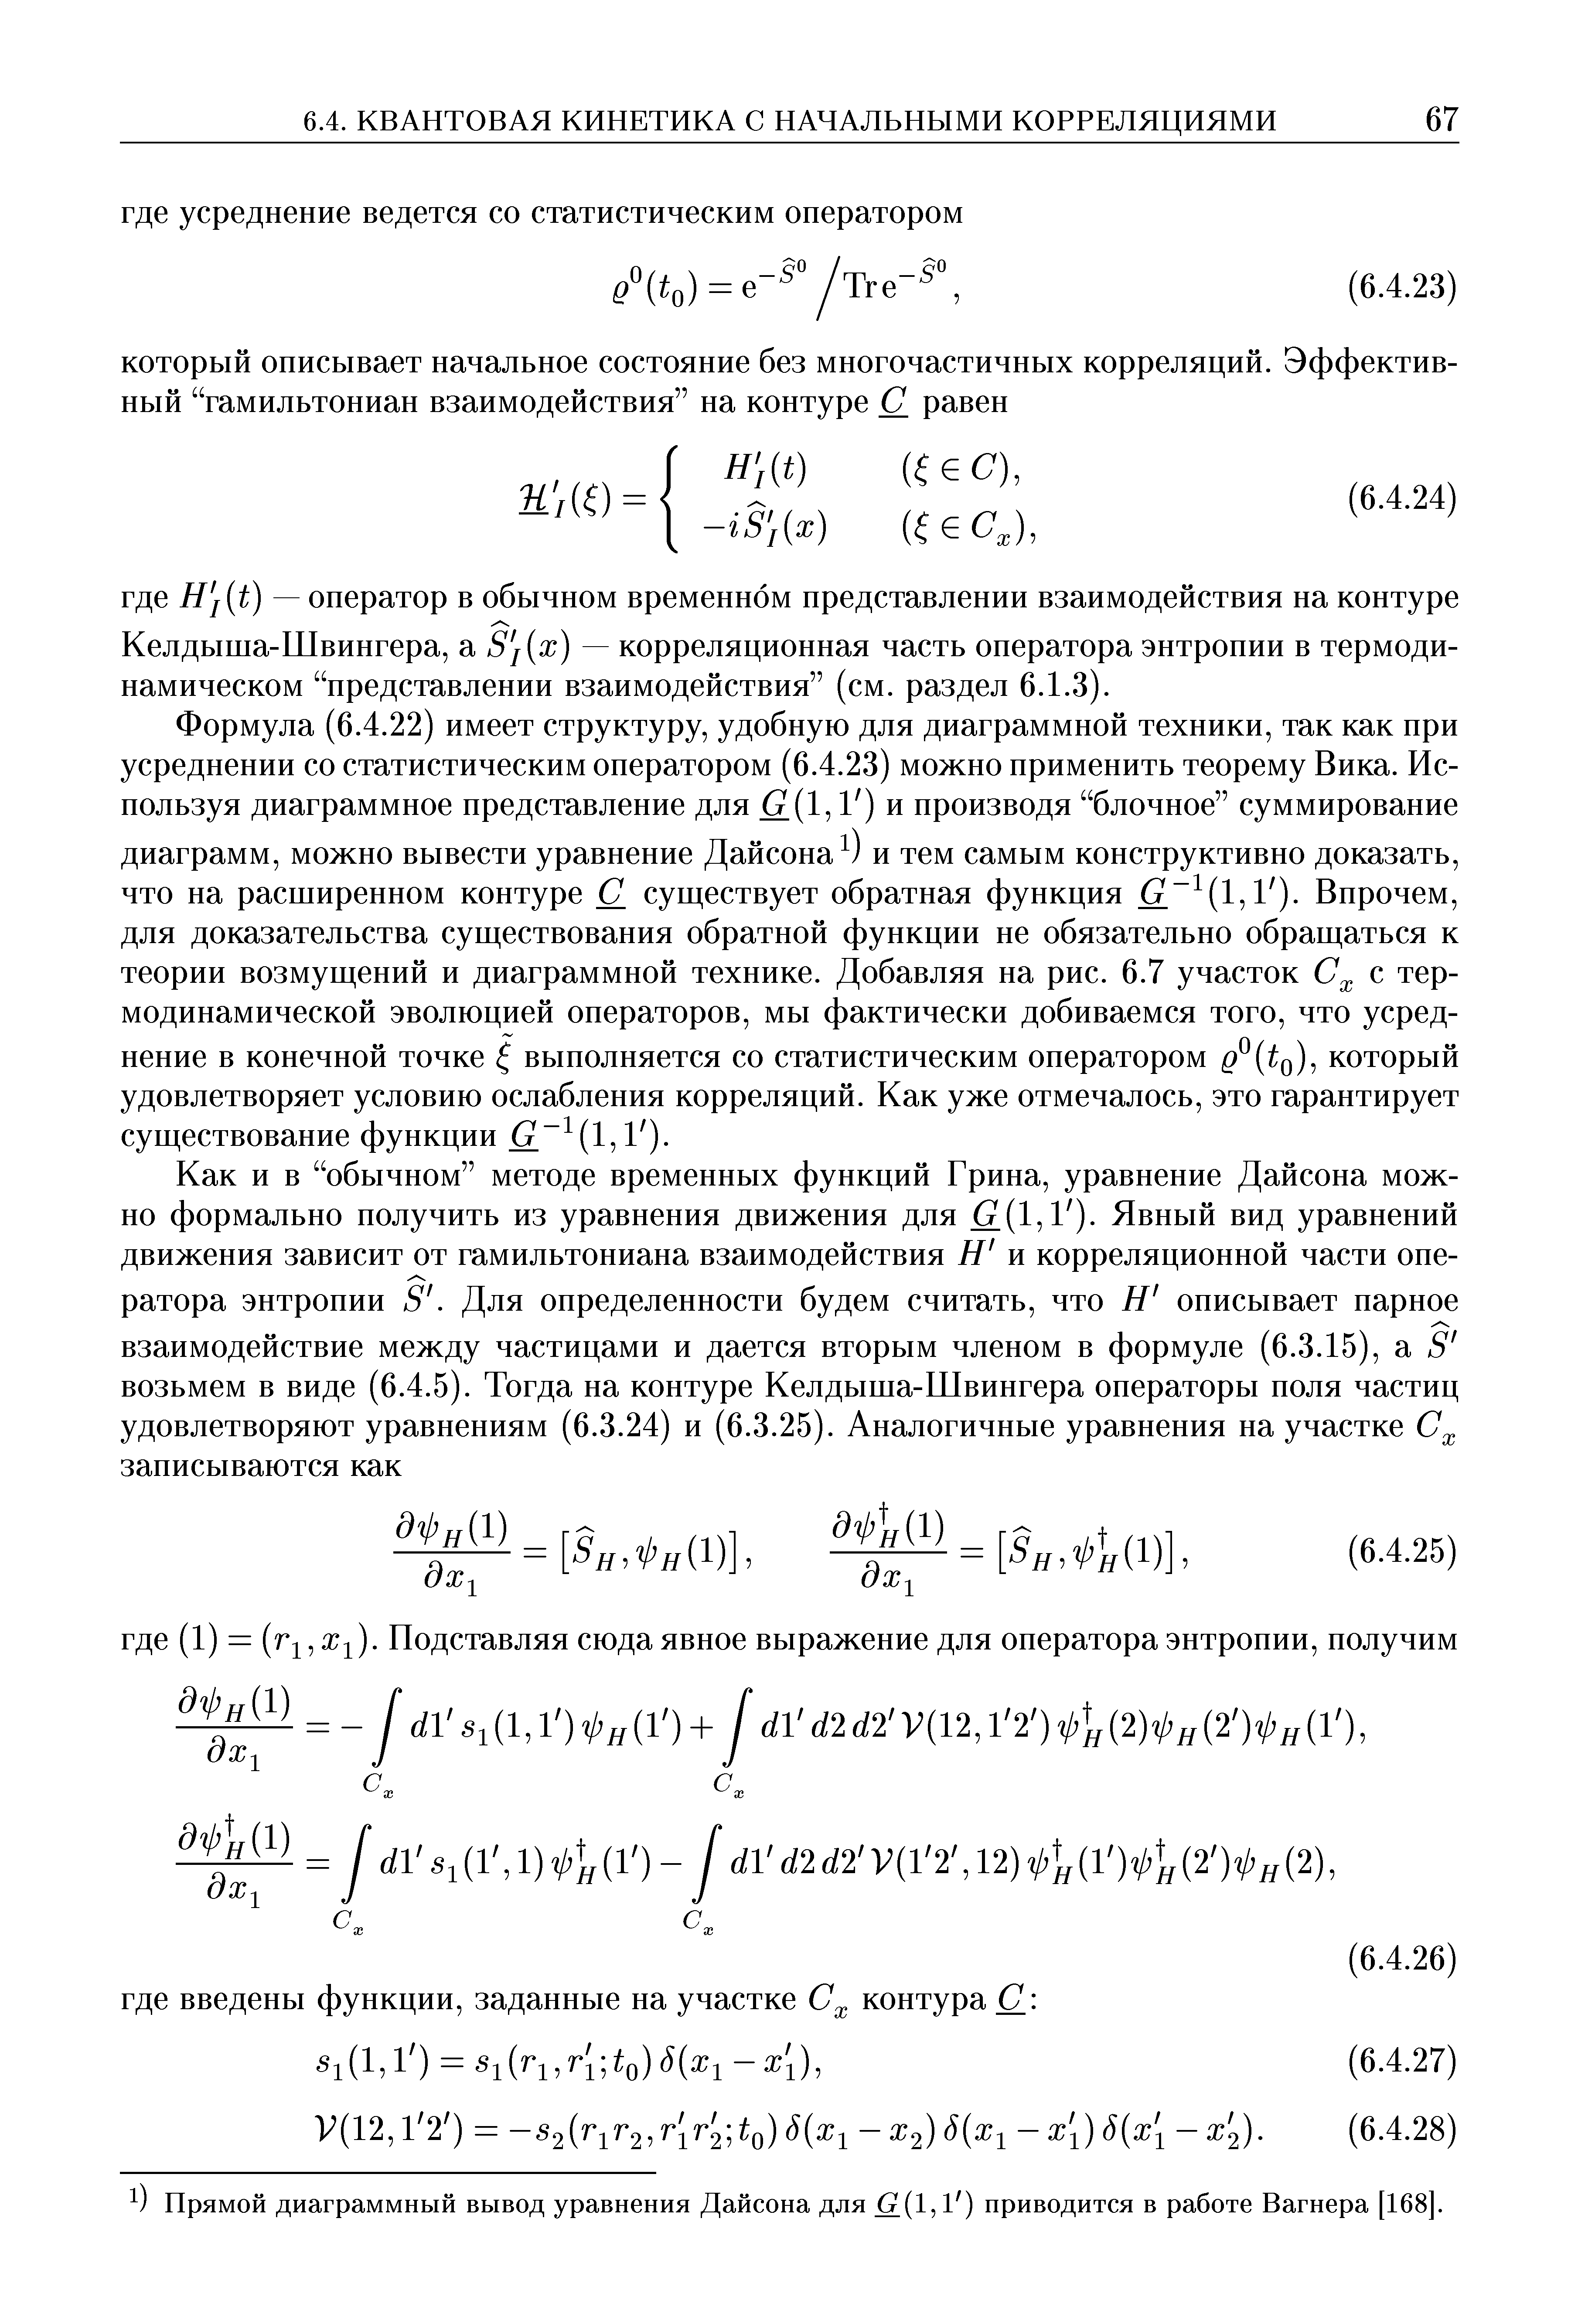 Келдыша-Швингера, а S j x) — корреляционная часть оператора энтропии в термодинамическом представлении взаимодействия (см. раздел 6.1.3).
